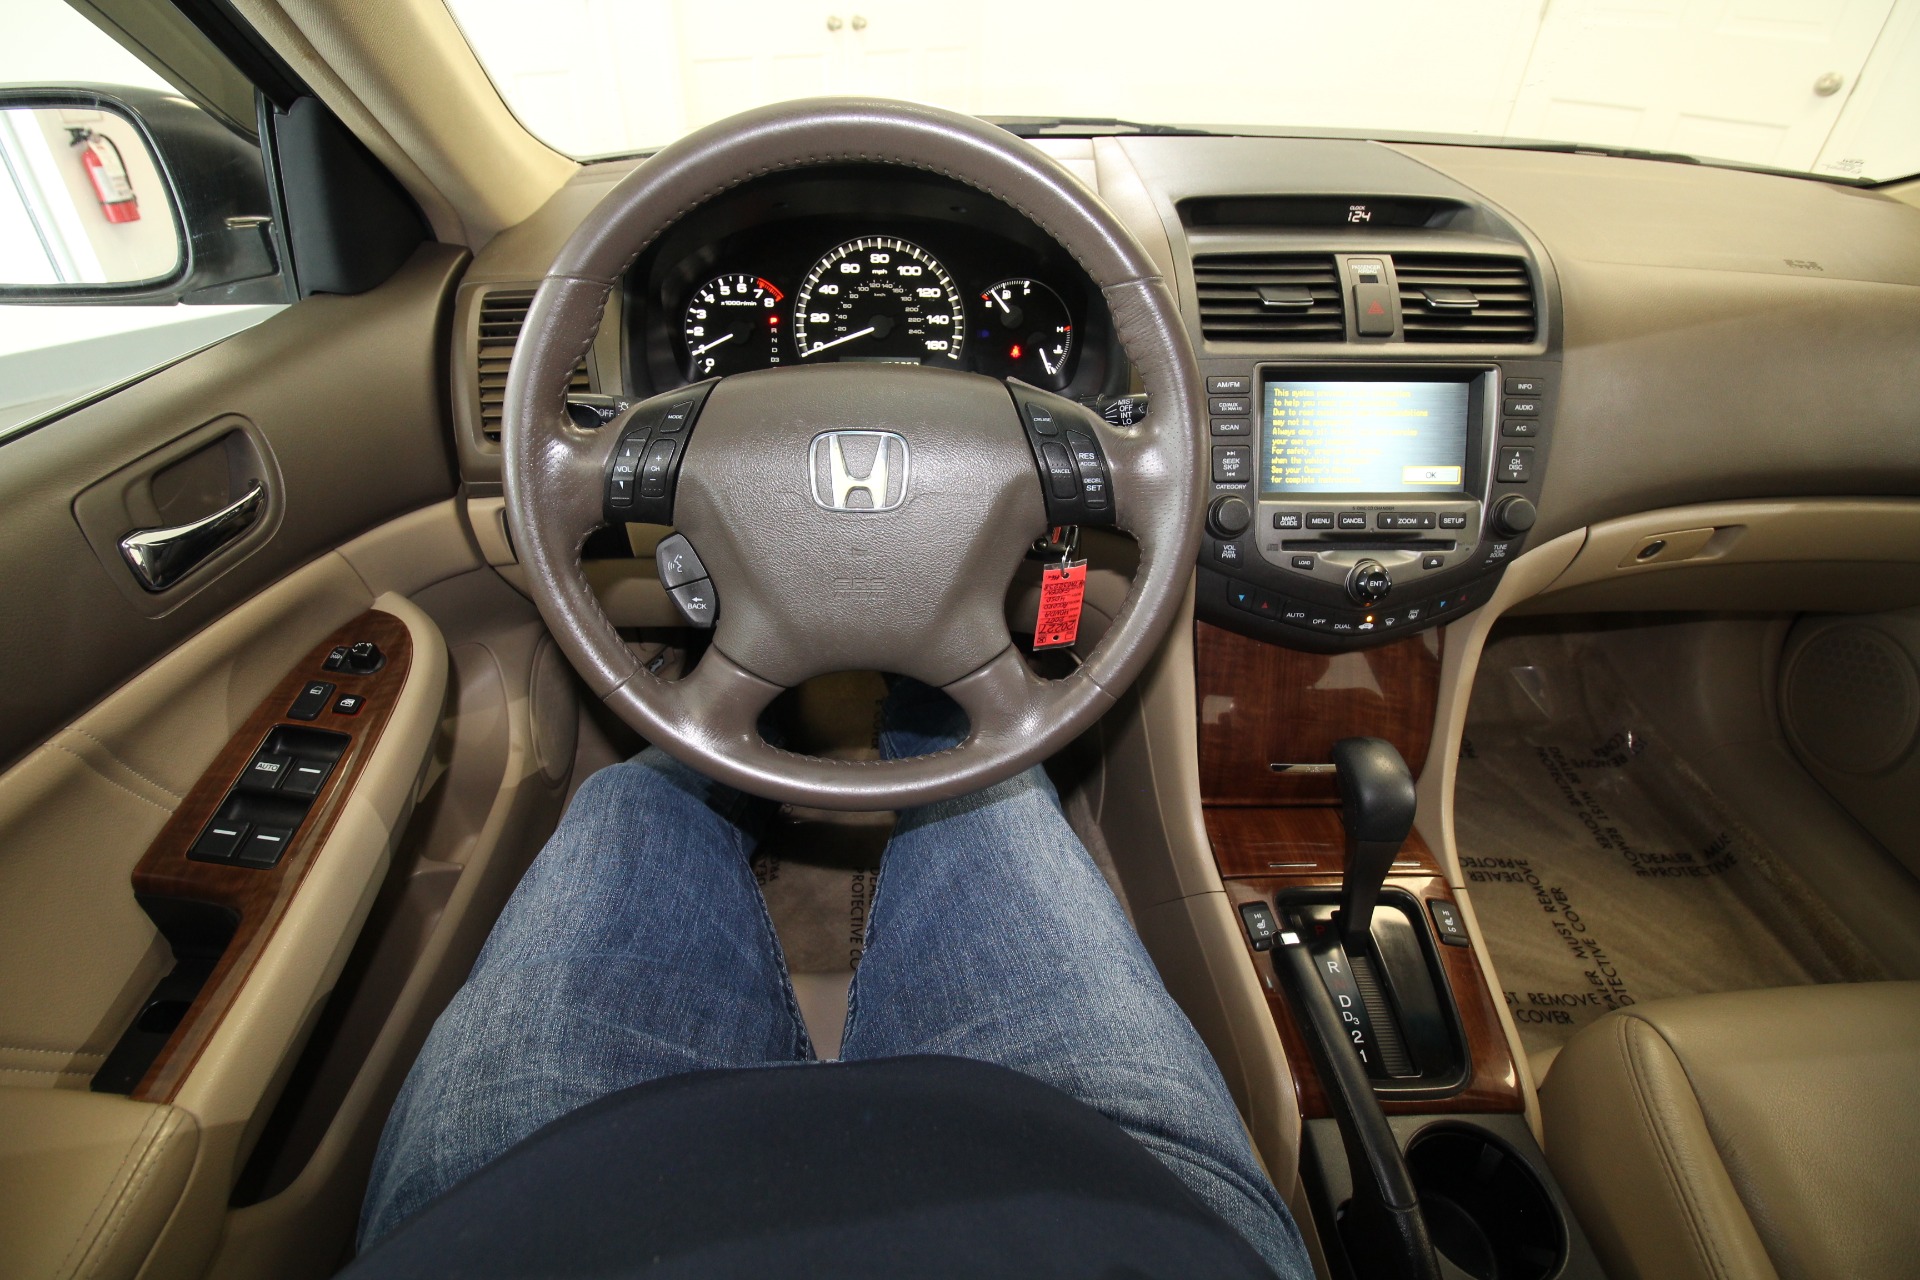 Used 2007 Taffeta White Honda Accord EX-L V-6 Sedan AT with Navigation | Albany, NY